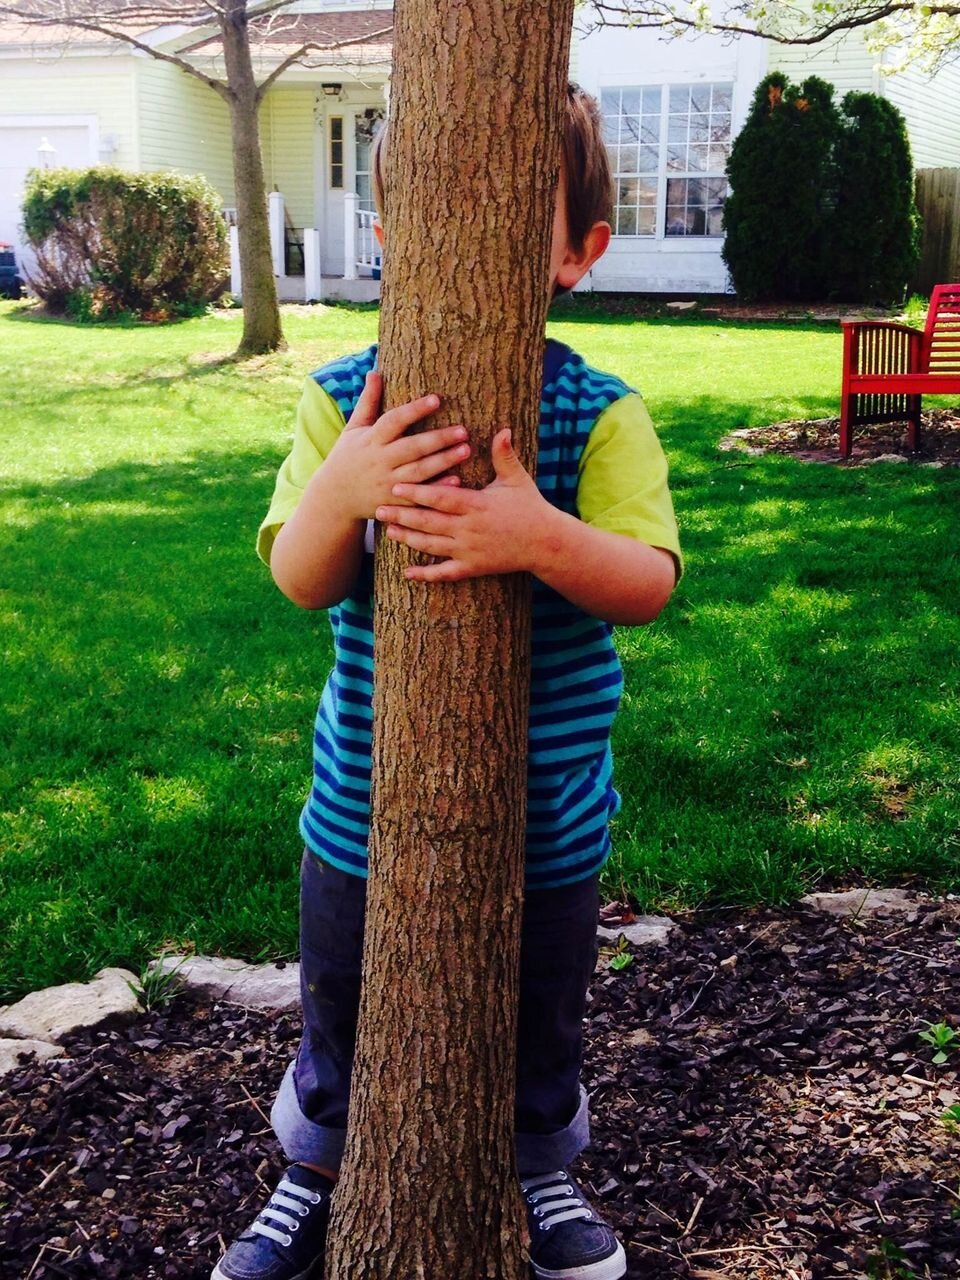 Ульта игра в прятки. Прячется за деревом. Спрятался за деревом. Ребенок прячется. Мальчик спрятался за дерево.